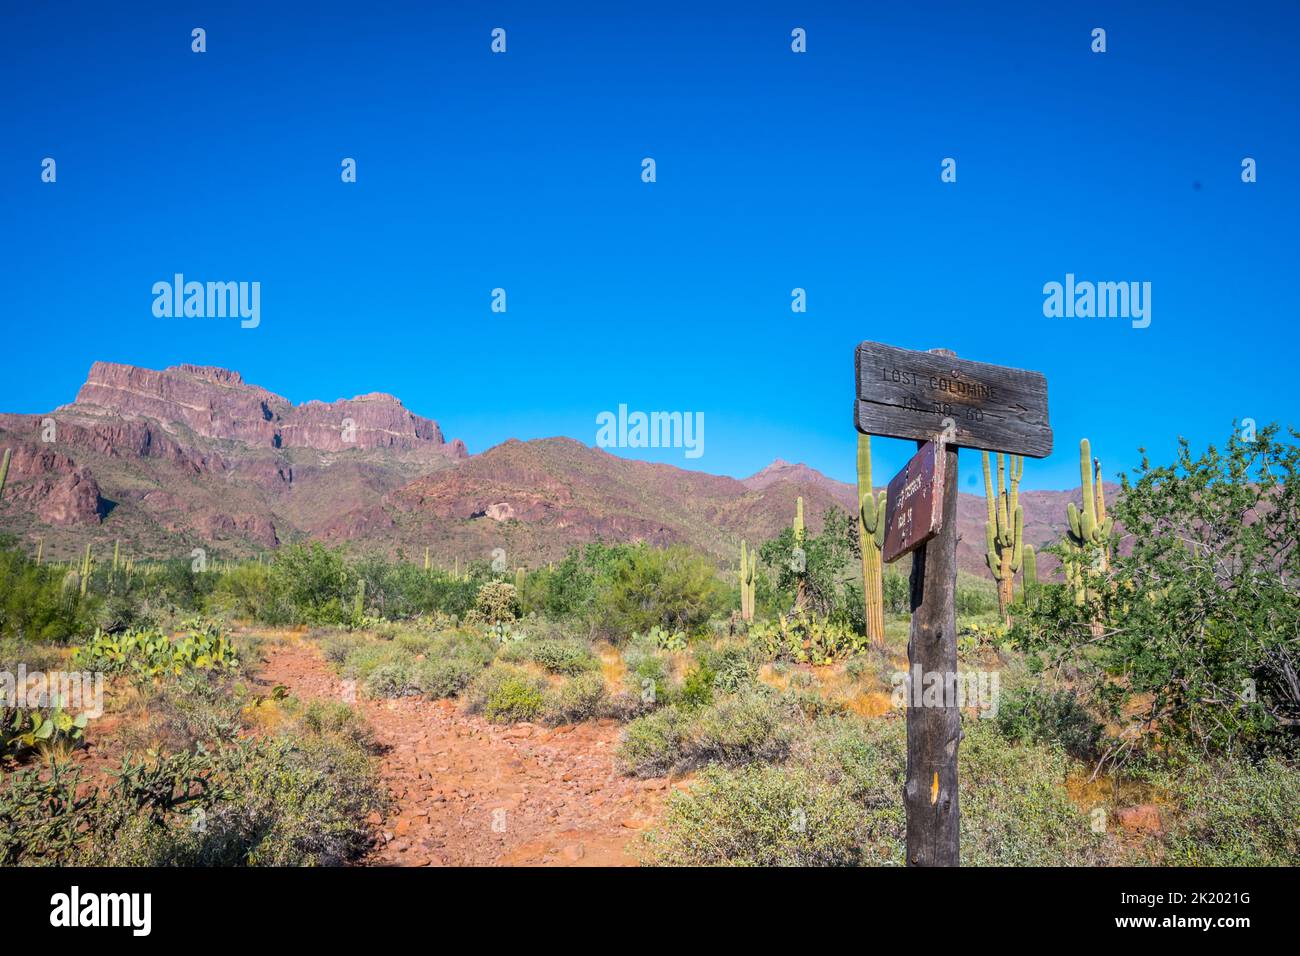 A description board for the trails in Apache Trail, Arizona Stock Photo